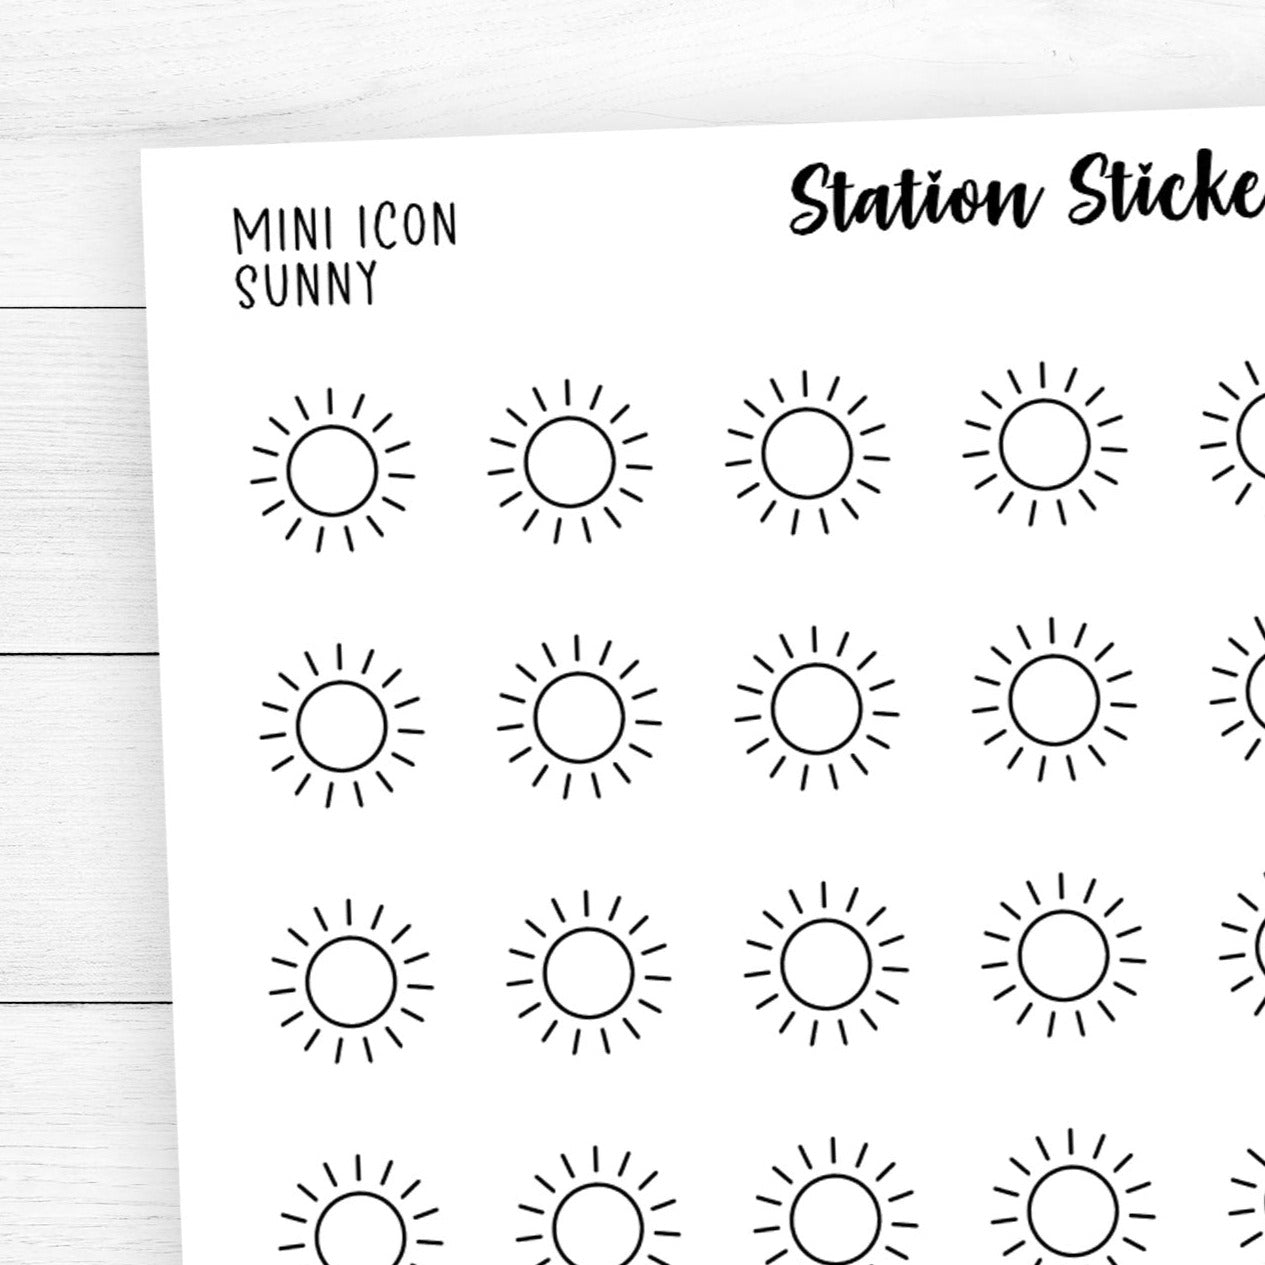 Sunny Mini Icon Stickers